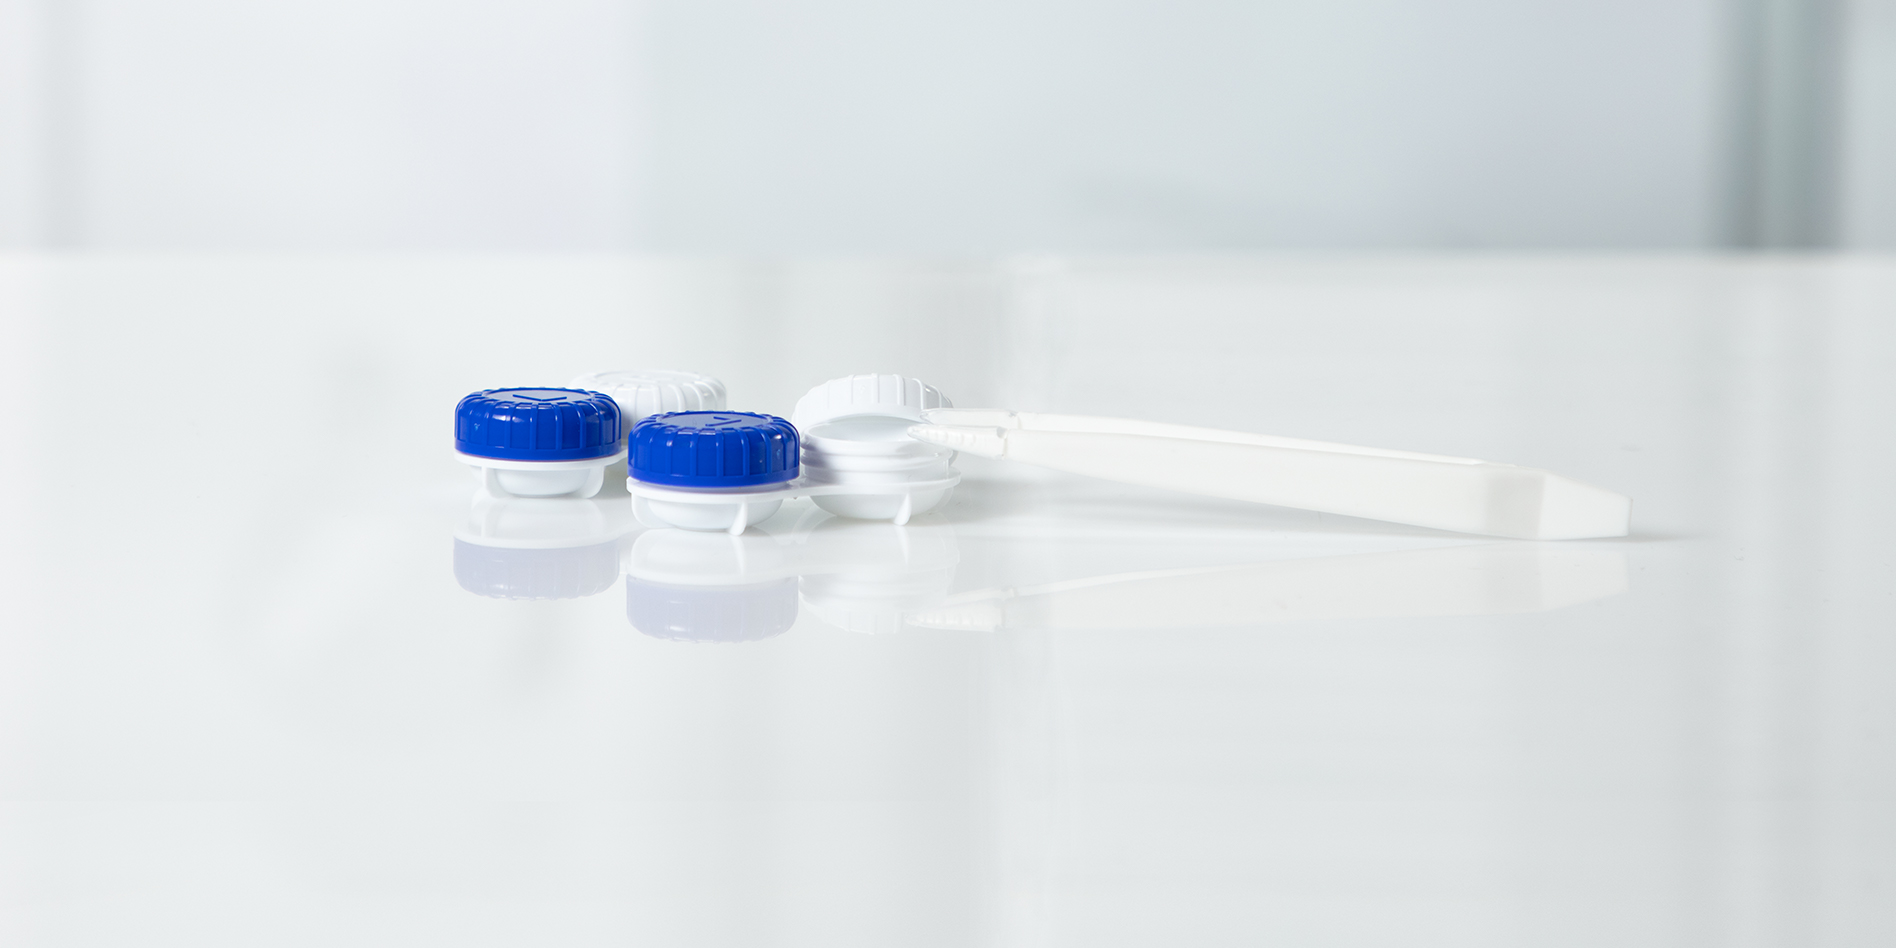 CFSVVD 6 Stück Kontaktlinsen Einsetzhilfe, Kontaktlinsen Hilfe zum  Einsetzen, Silikon Kontaktlinse Einsetzer Harte und Weiche  Kontaktlinsensauger mit Aufbewahrung Hülle für Kontaktlinsen : :  Drogerie & Körperpflege